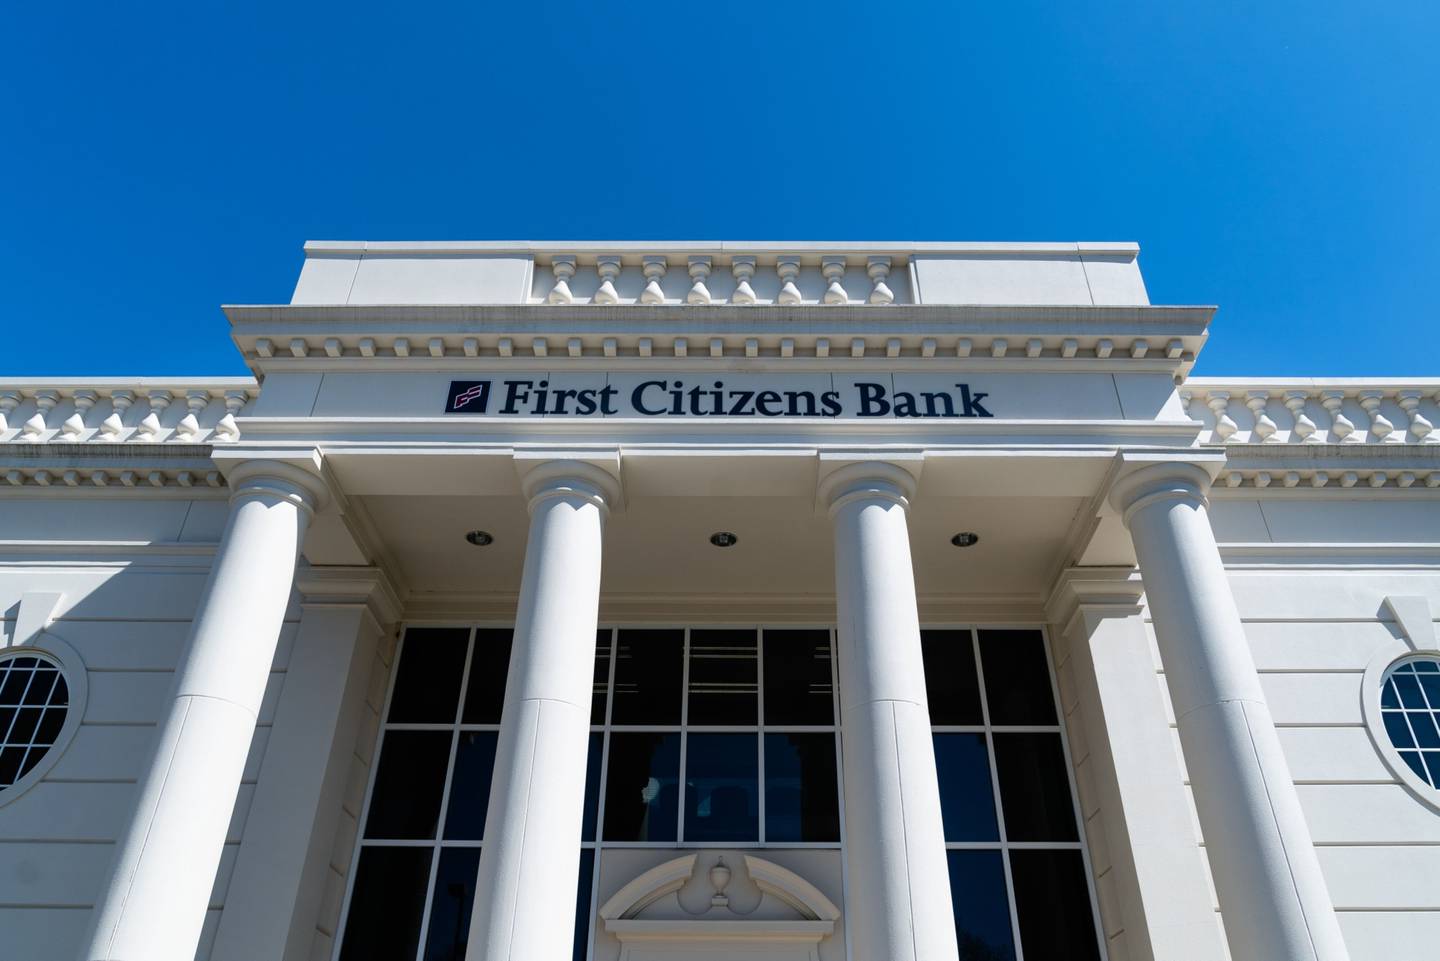 El banco tiene experiencia en la compra de rivales en quiebra. Ha adquirido más de 20 bancos respaldados por la FDIC desde 2009, realizando varias operaciones a raíz de la crisis financiera.